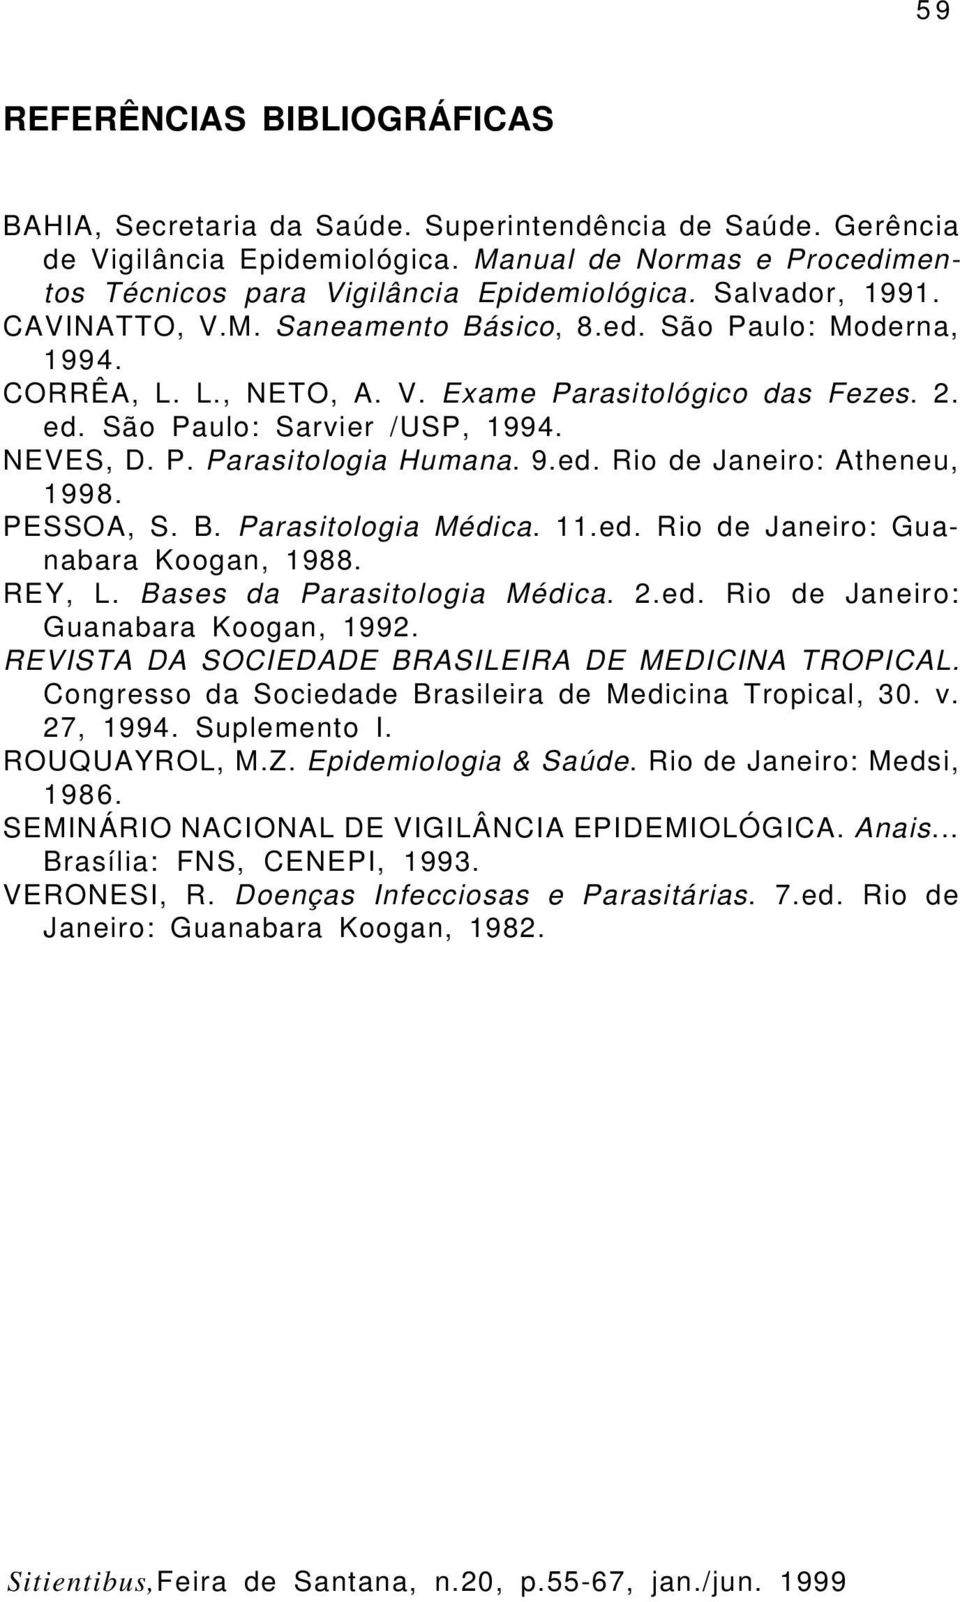 9.ed. Rio de Janeiro: Atheneu, 1998. PESSOA, S. B. Parasitologia Médica. 11.ed. Rio de Janeiro: Guanabara Koogan, 1988. REY, L. Bases da Parasitologia Médica. 2.ed. Rio de Janeiro: Guanabara Koogan, 1992.